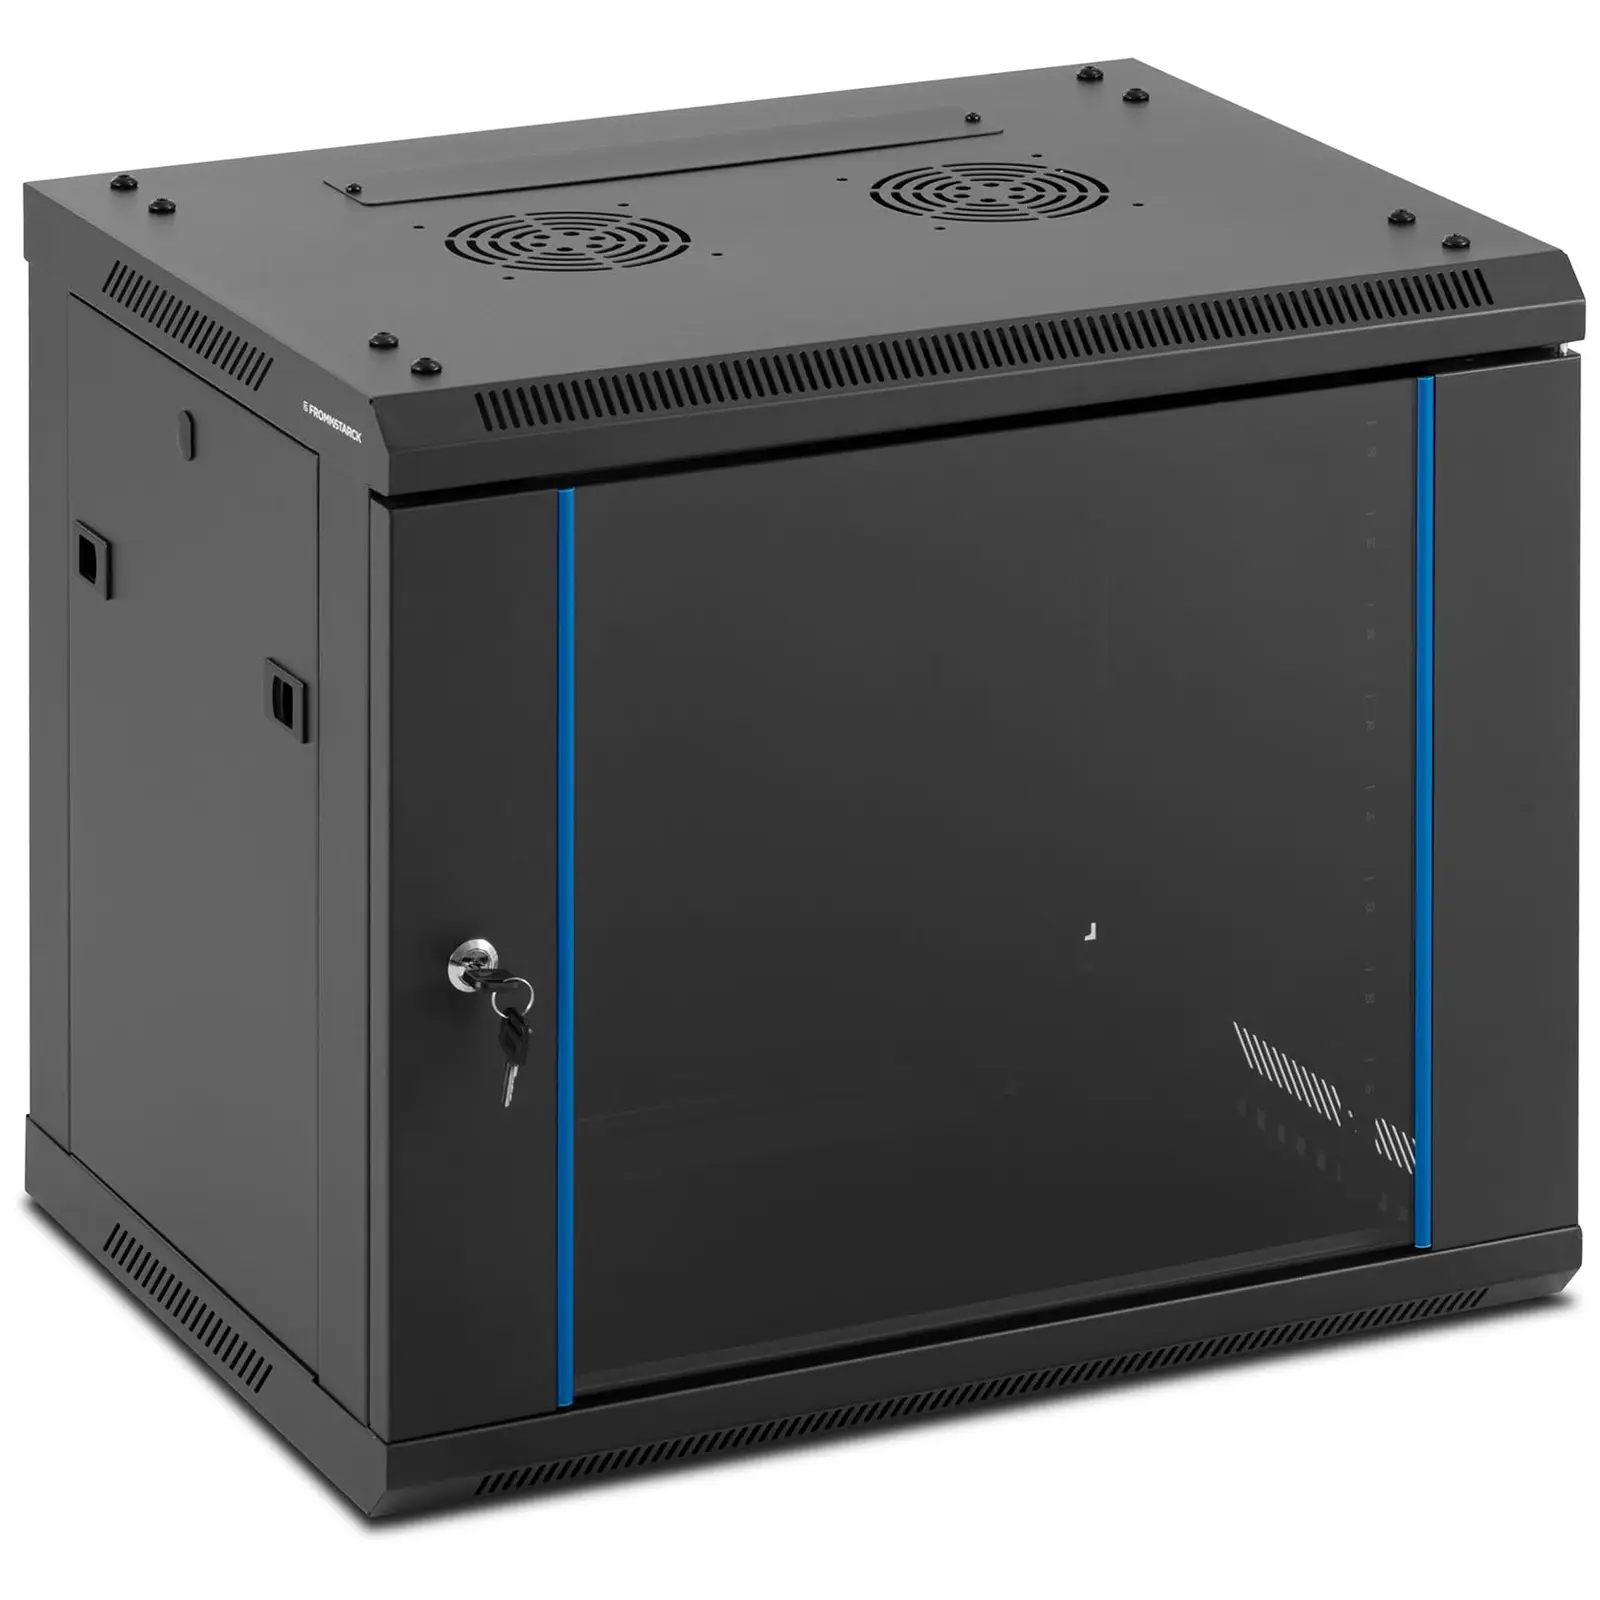 Serverschrank - 19 Zoll - 9 HE - abschließbar - bis 60 kg - Schwarz - abnehmbare Rückseite